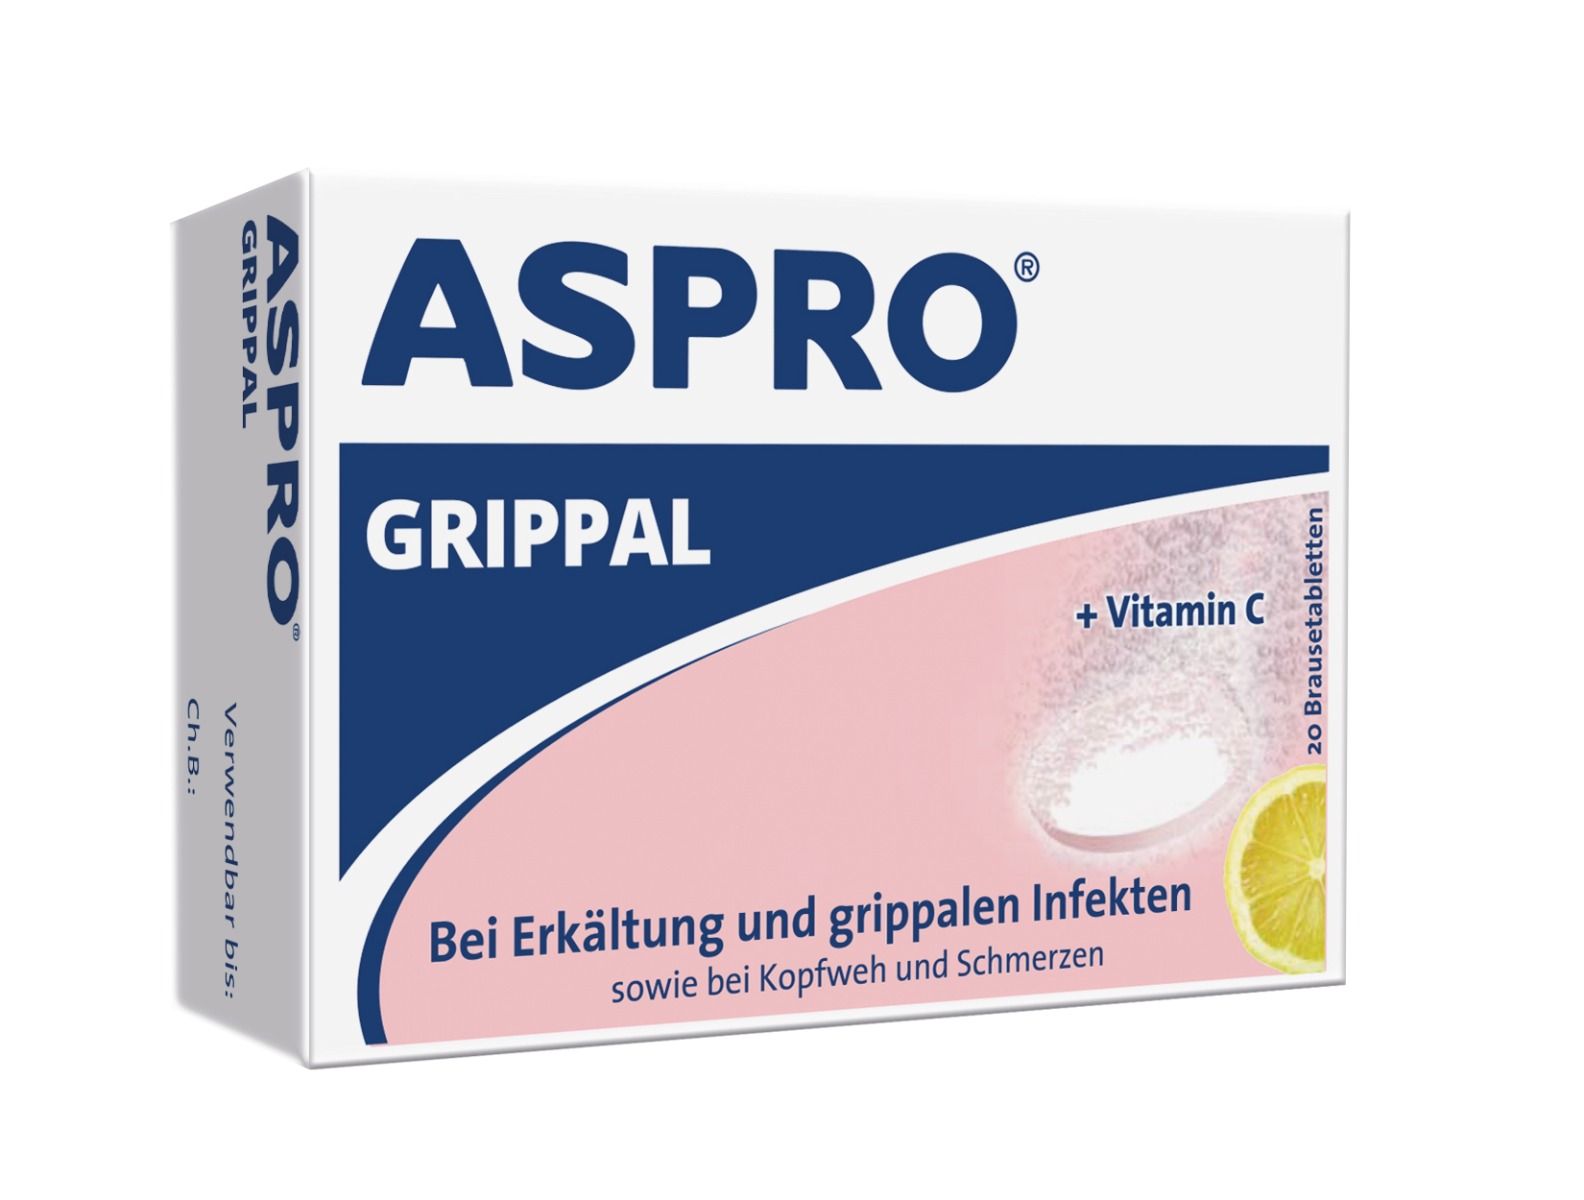 Abbildung Aspro Grippal 500 mg ASS/250 mg Vit C Brausetabletten